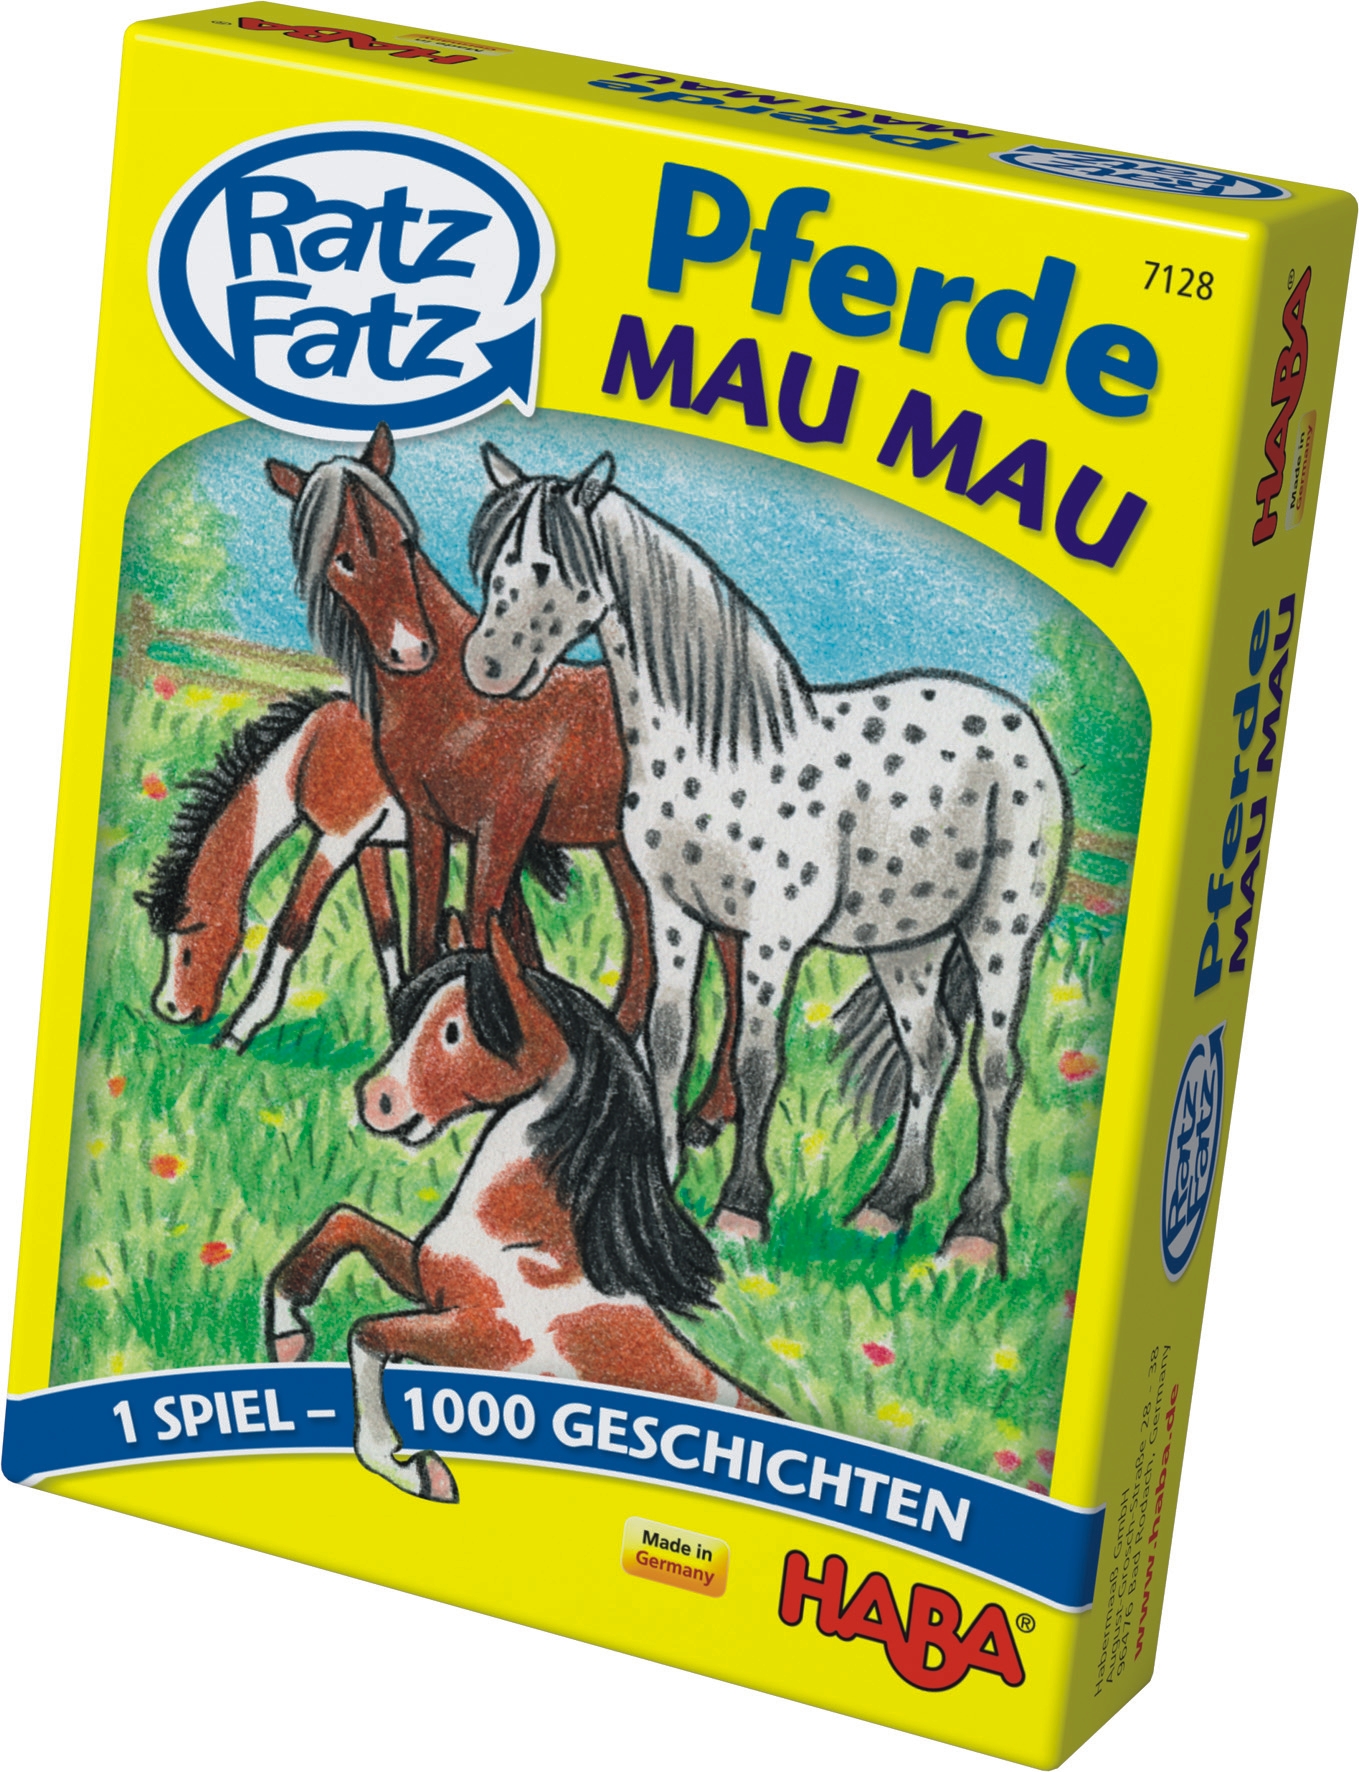 Ratz Fatz Pferde Mau-Mau